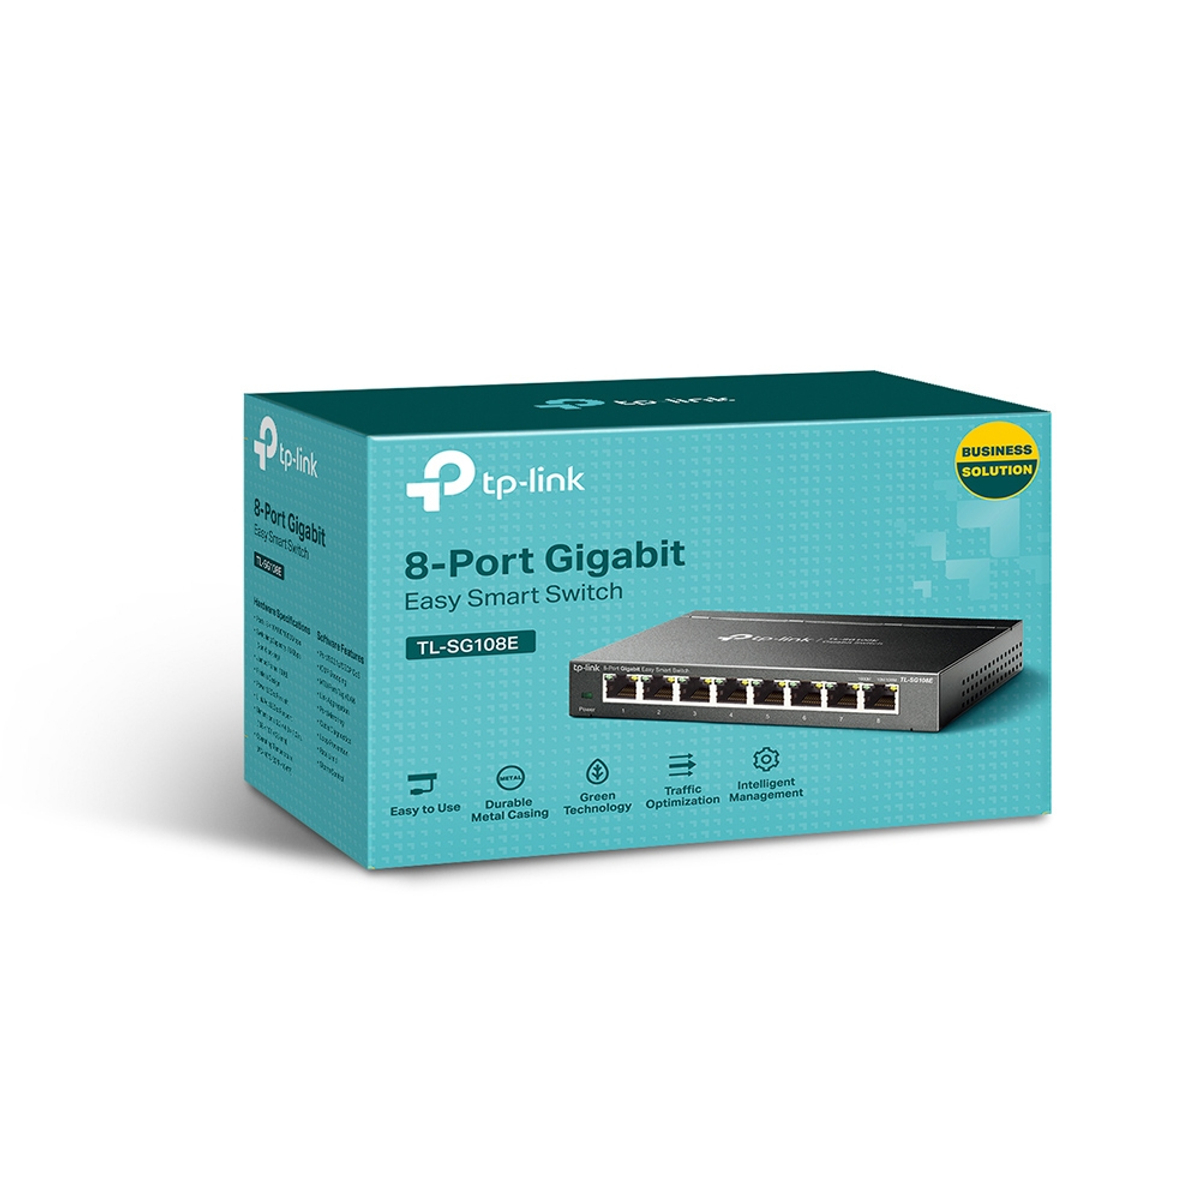 8-Port Gigabit Easy Smart Switch